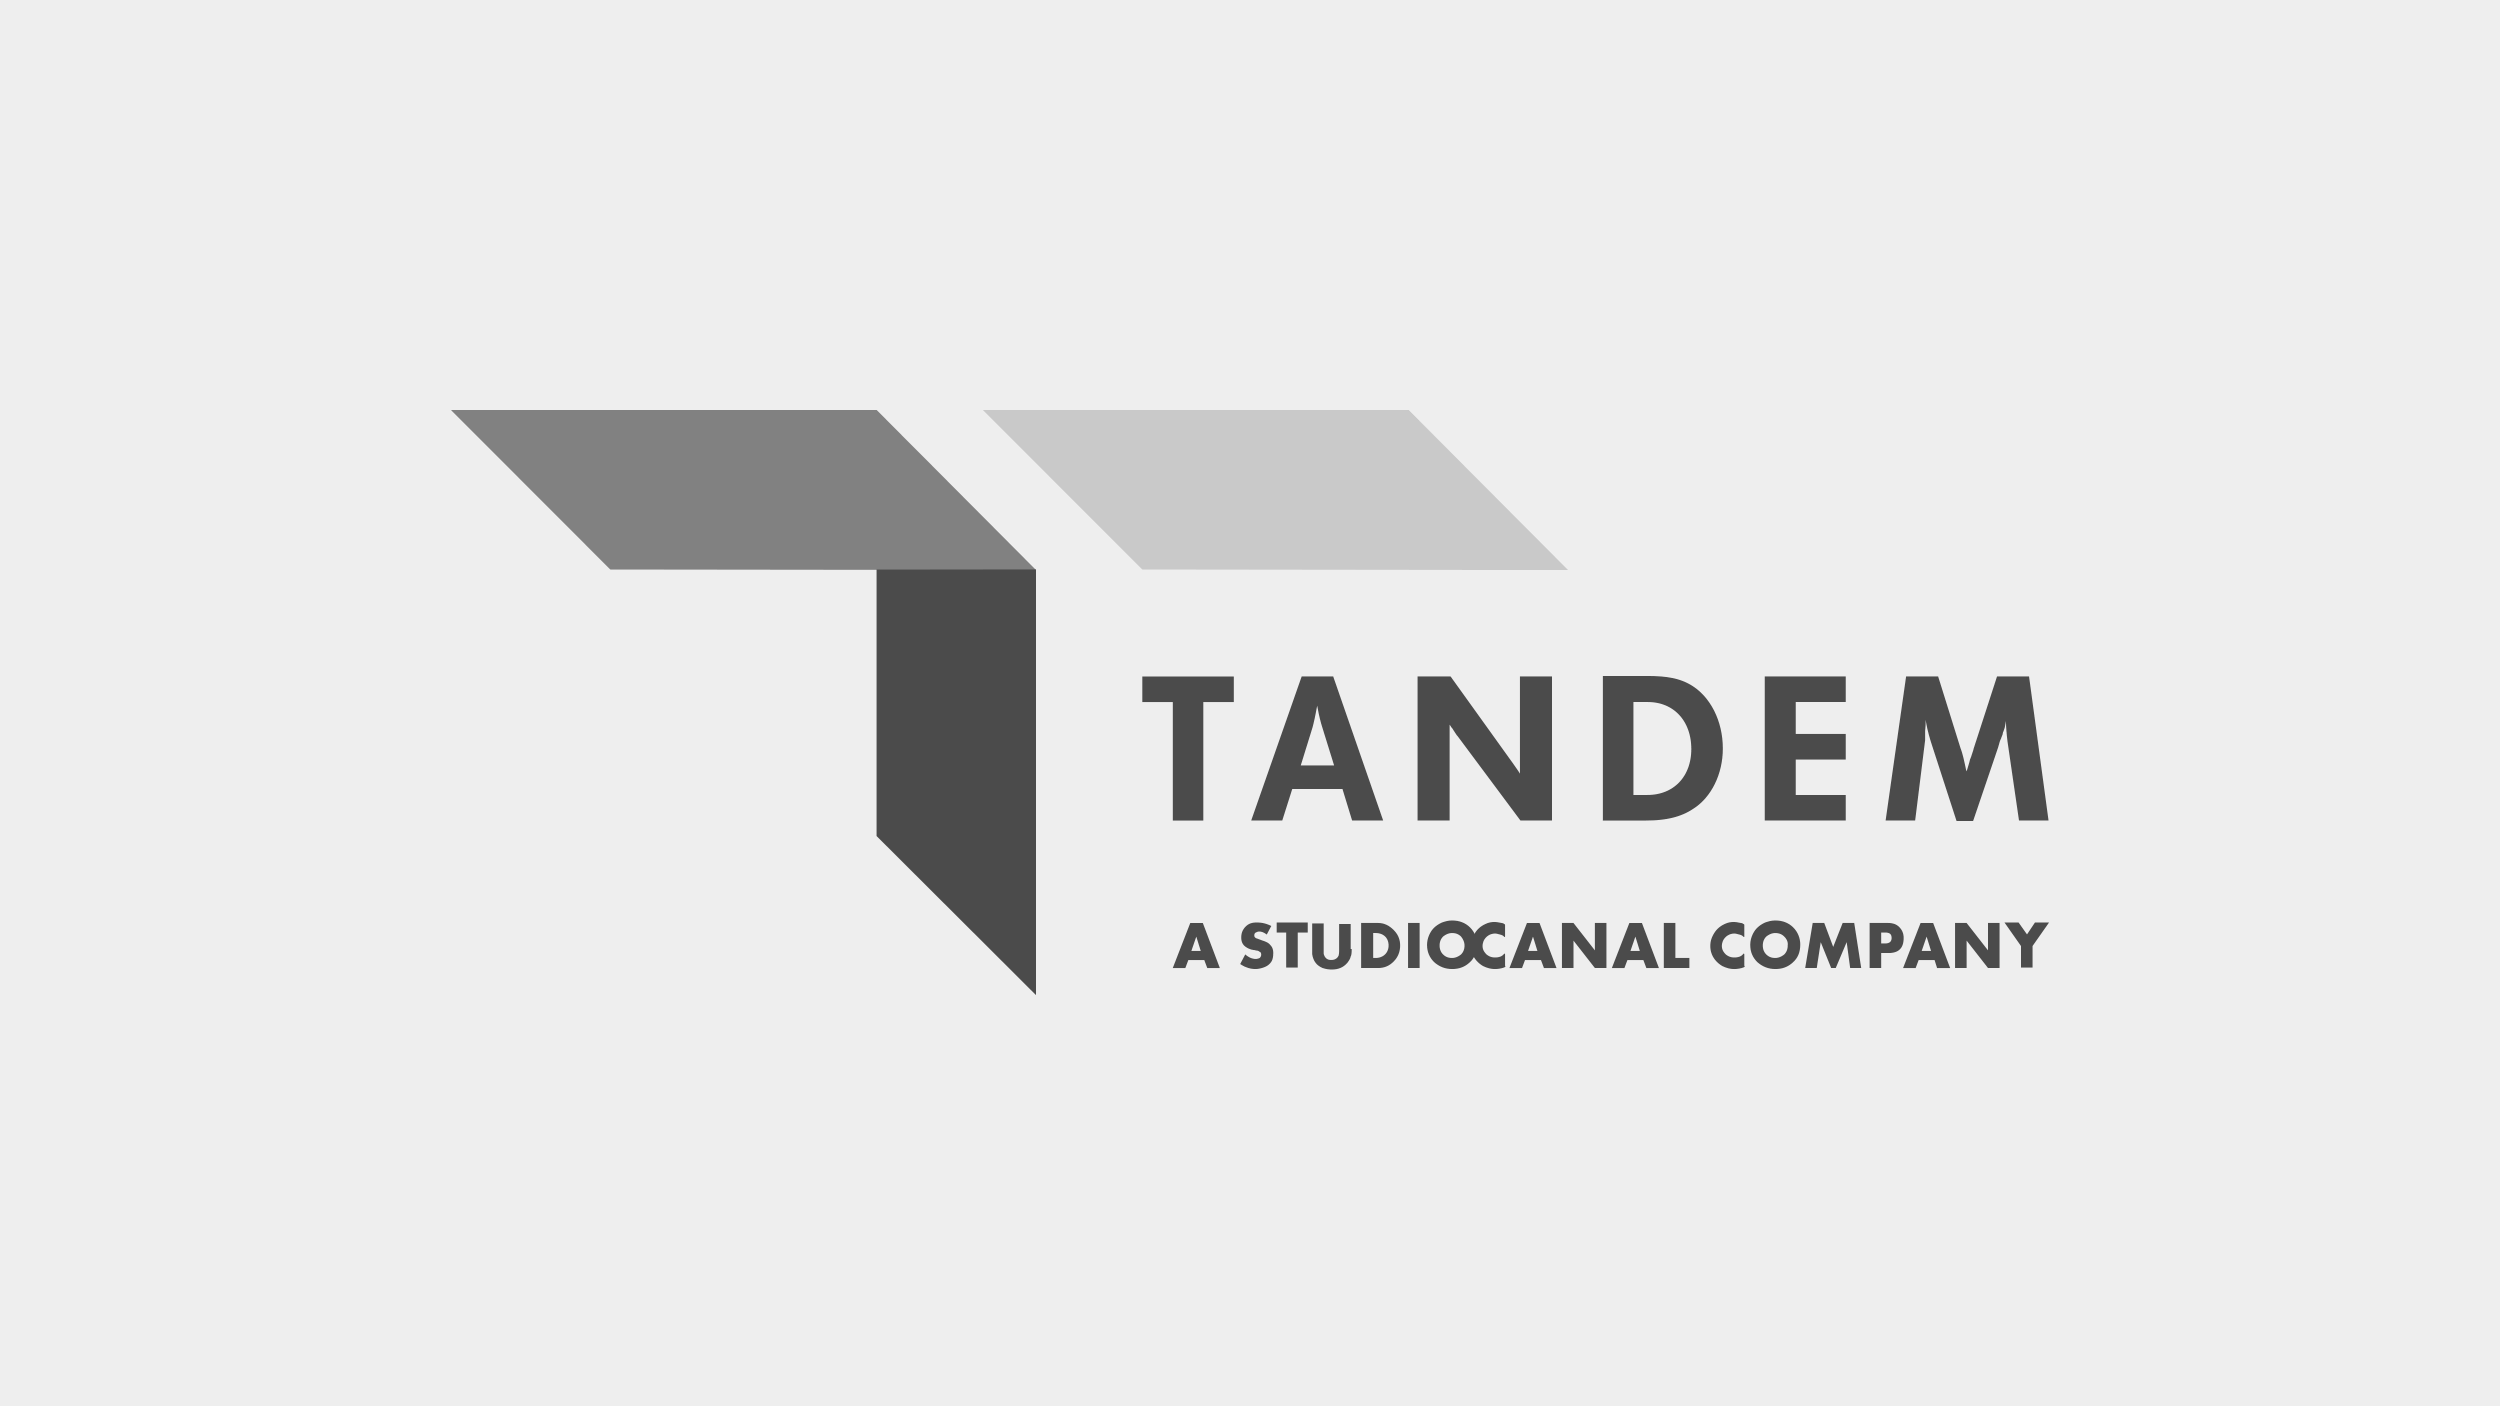 SOAP-IMAGES_Clients_TANDEM-StudioCanal.png